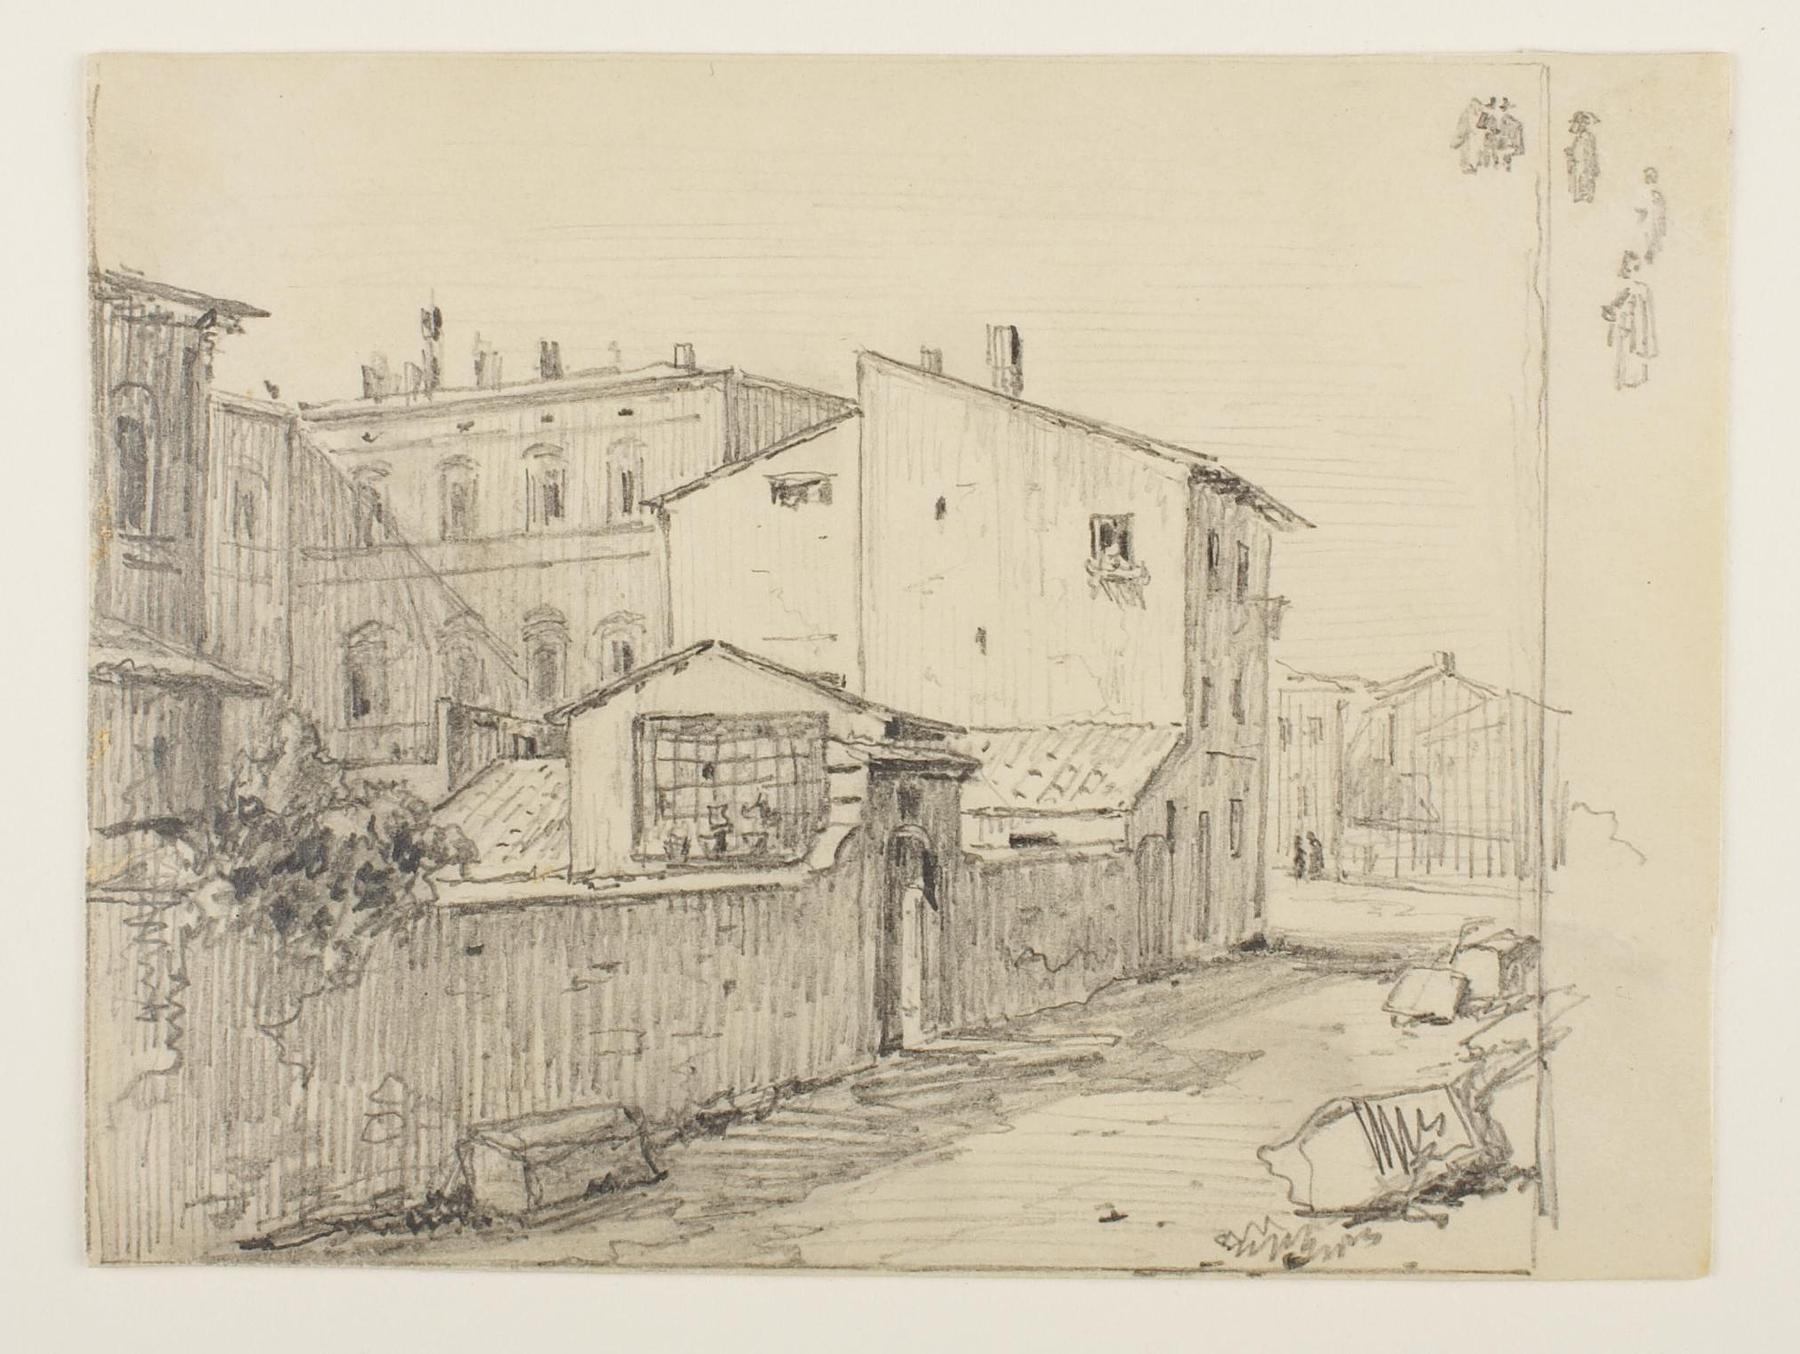 Vicolo delle Colonette di Barberini and Thorvaldsens Small Studios in front of Palazzo Barberini, D1891